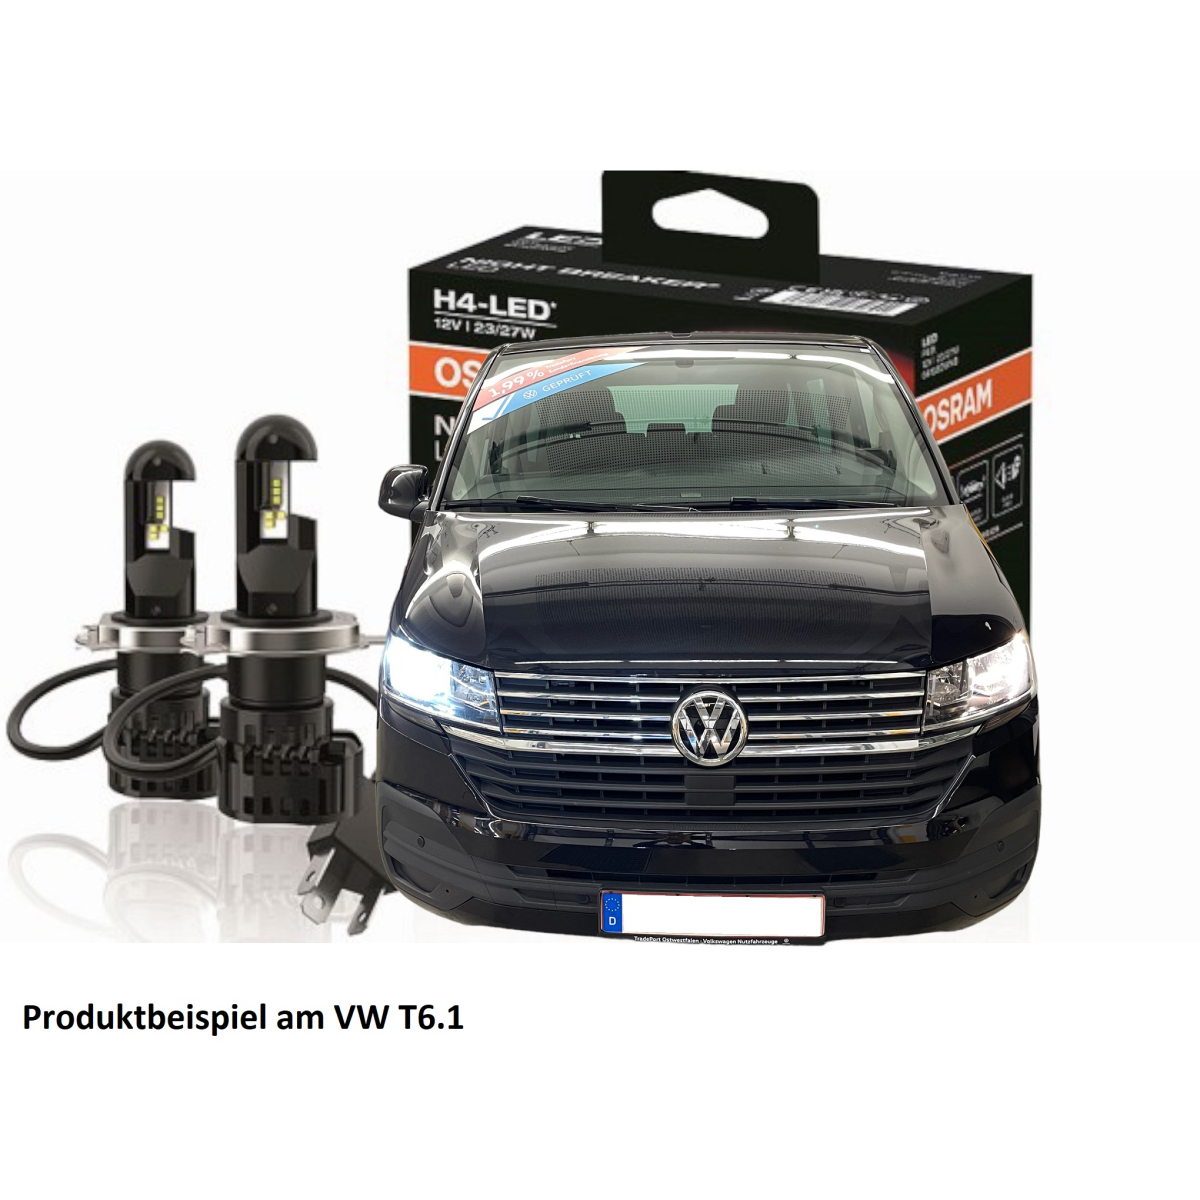 VW T5.1 retrofit kit H4 LED lamp set Osram Night Breaker street legal,  149,95 €